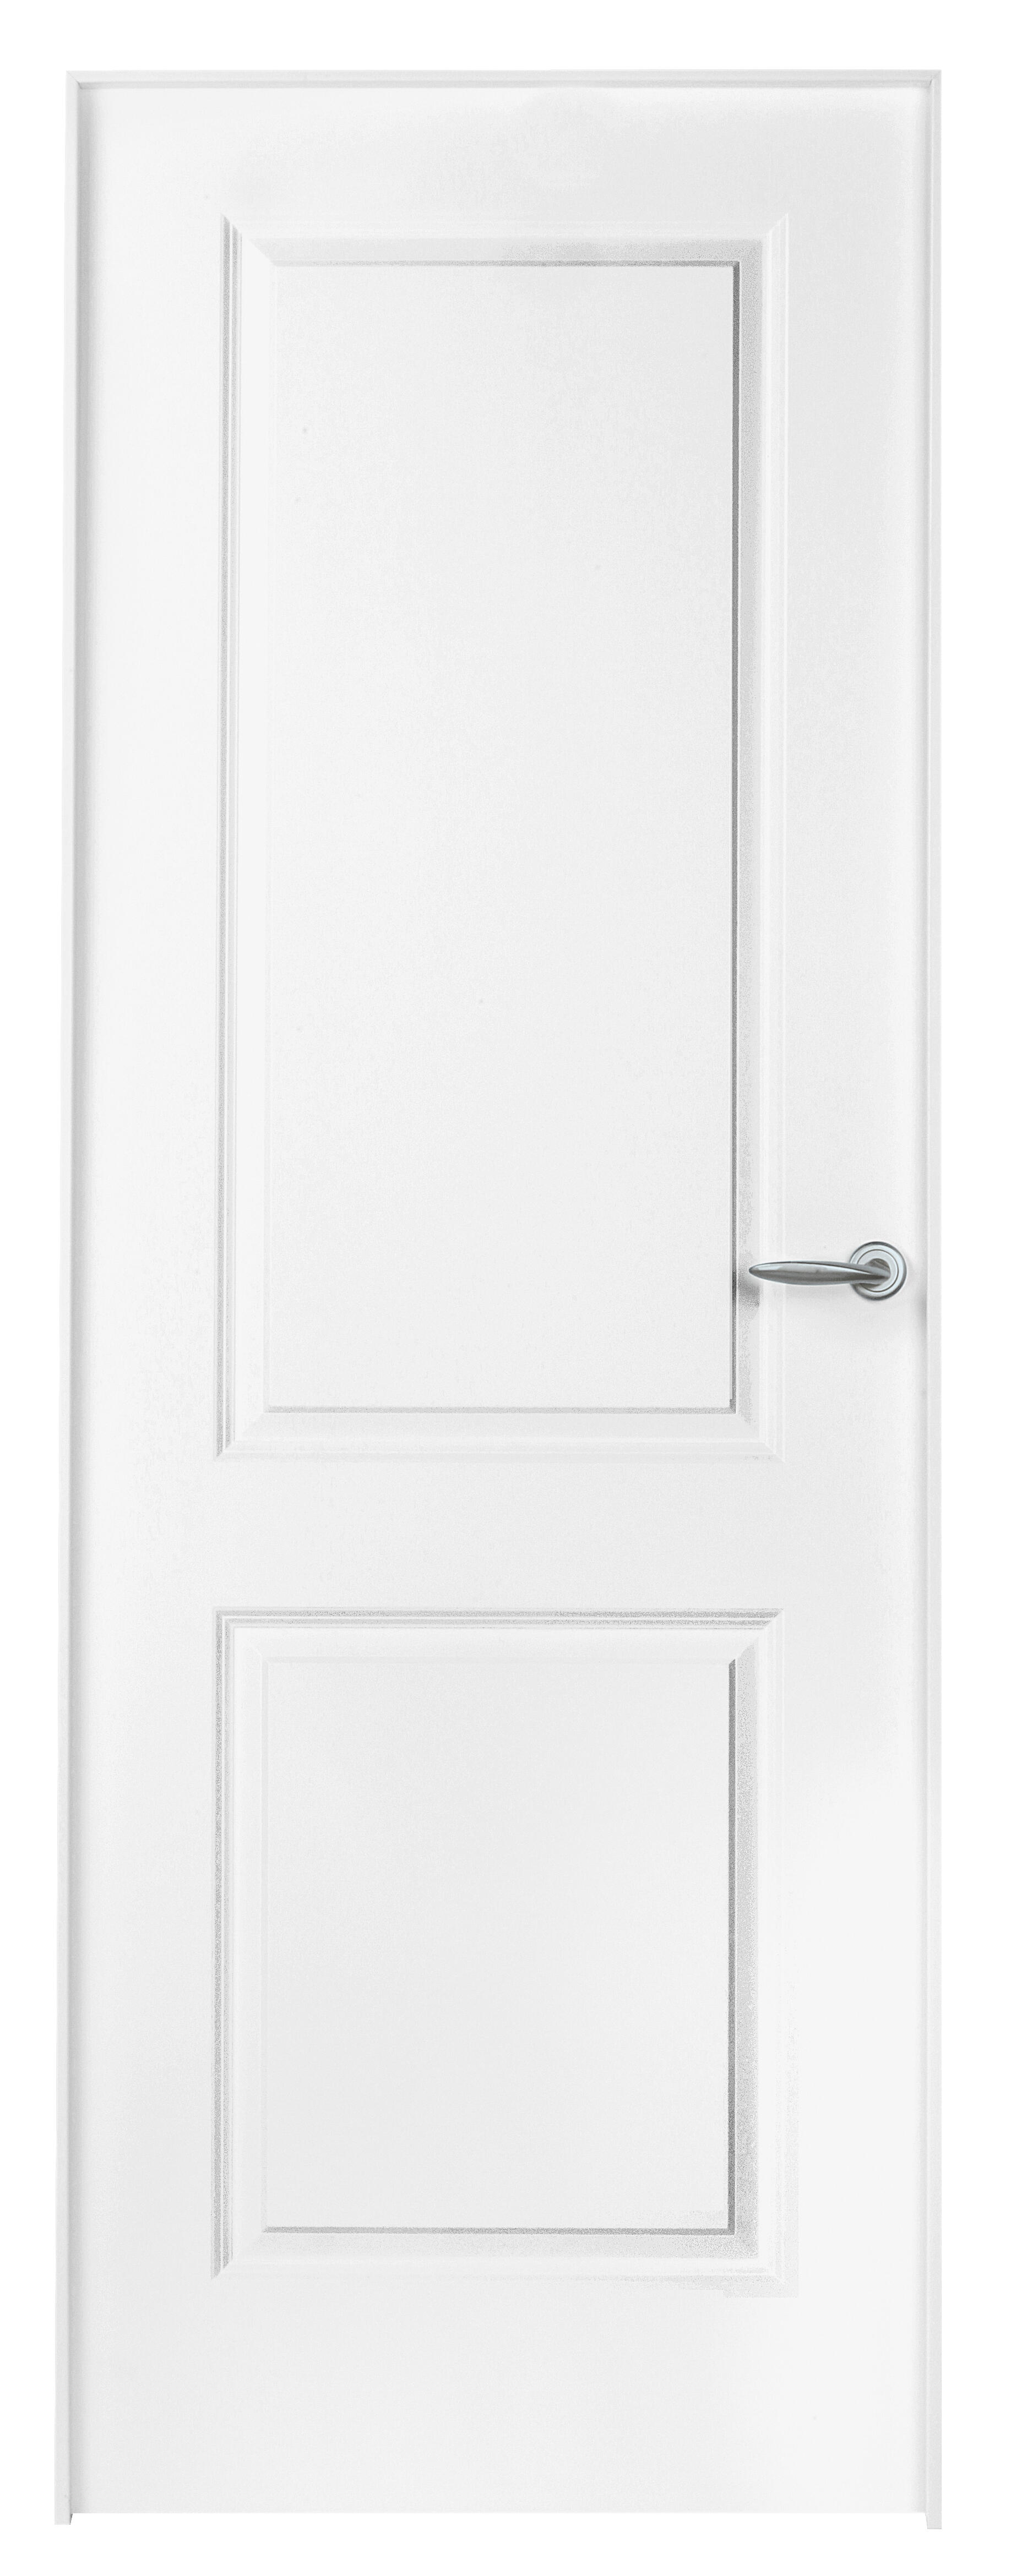 Puerta abatible bonn blanca aero blanco izquierda de 90x30 y 62.5cm